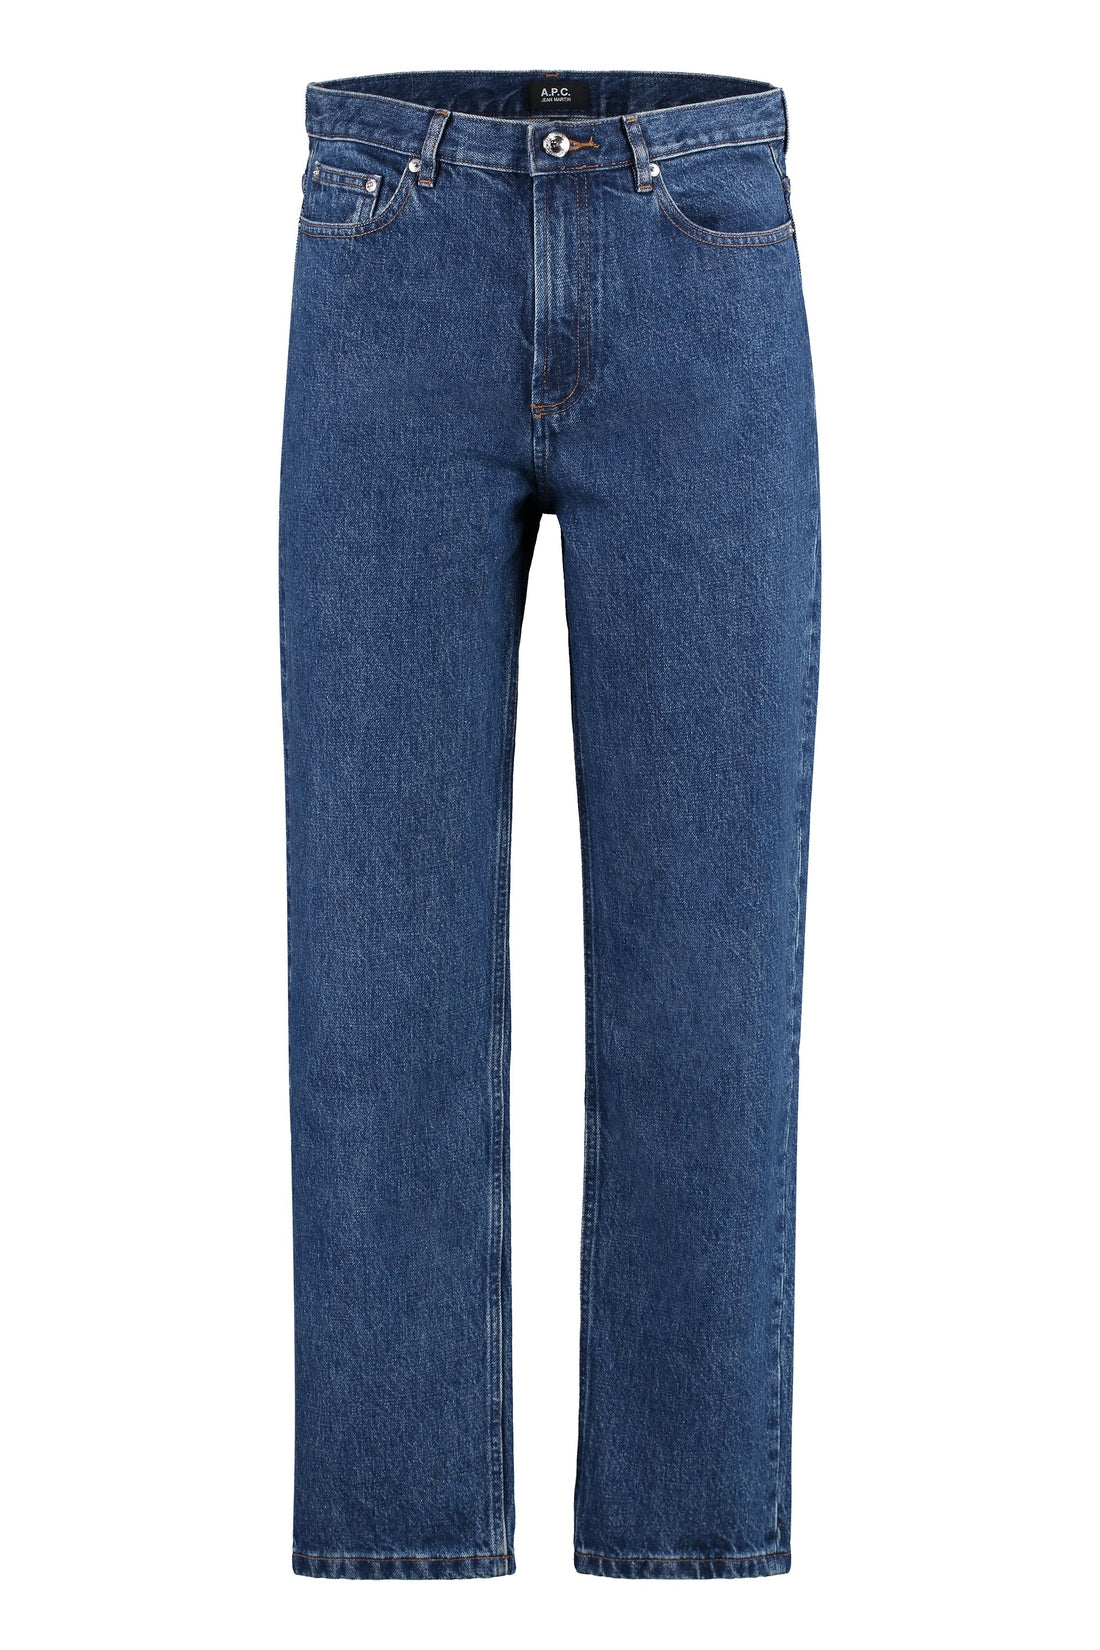 A.P.C.-OUTLET-SALE-Martin 5-pocket jeans-ARCHIVIST